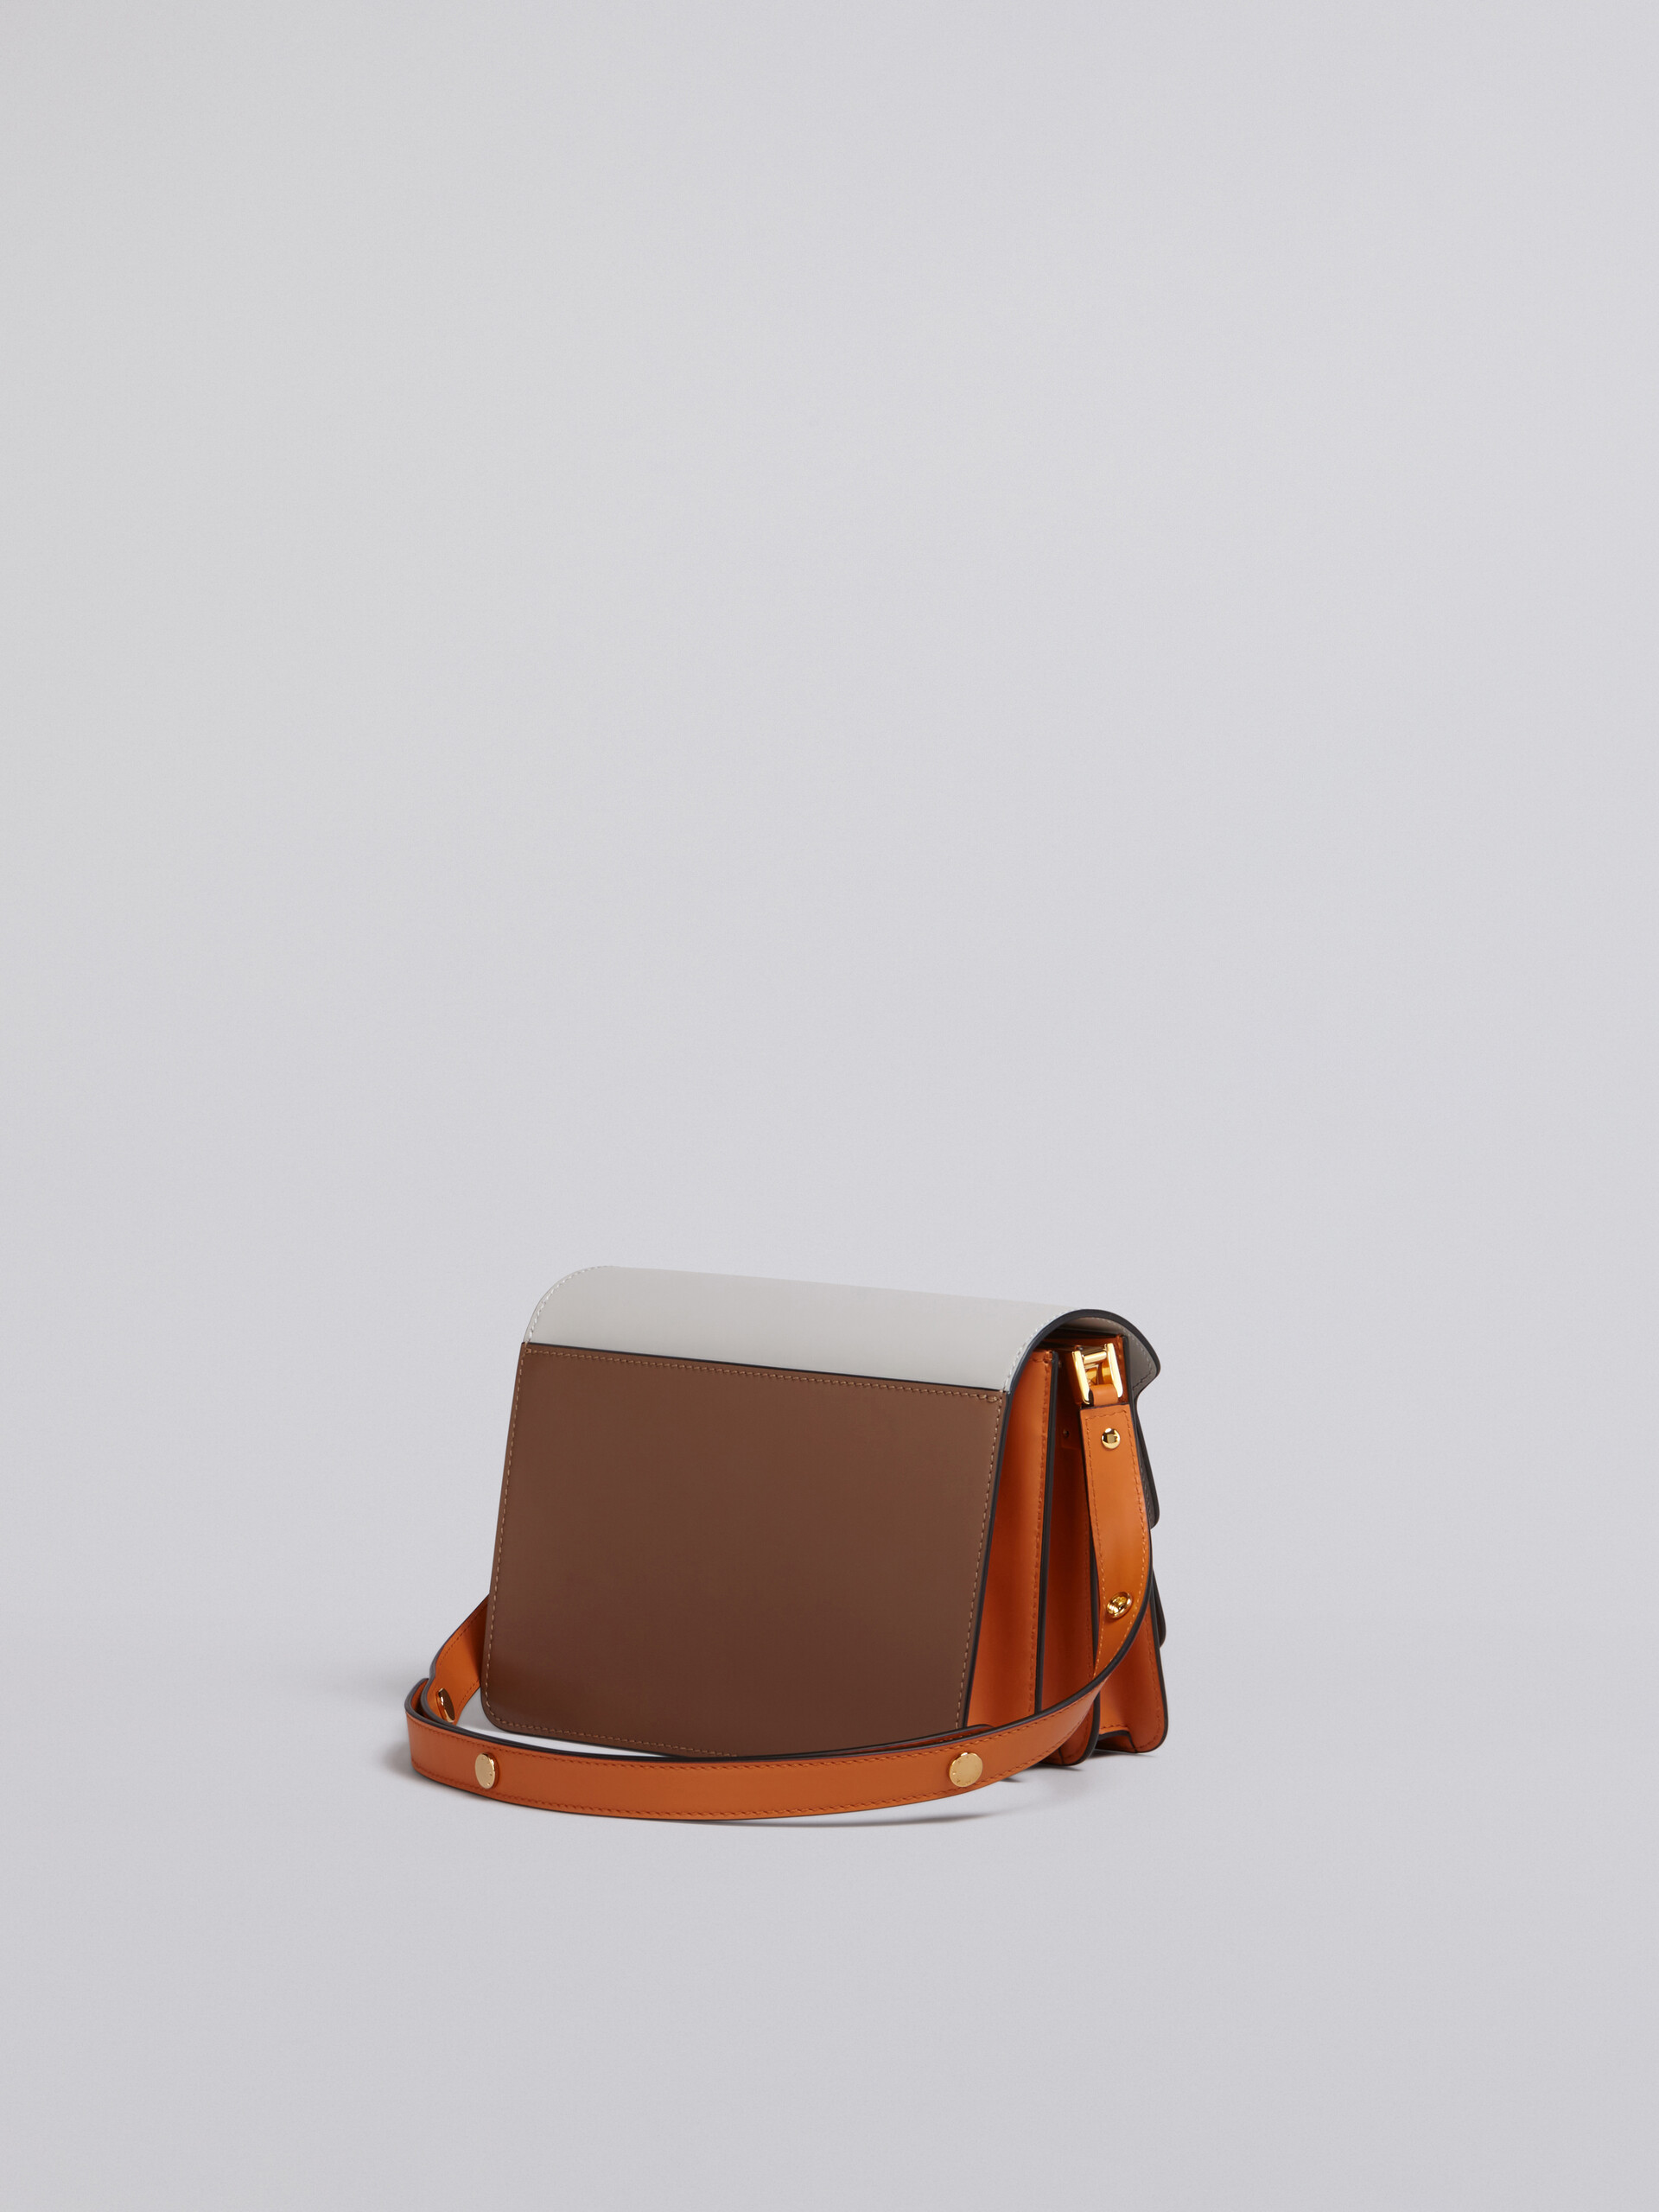 TRUNK Bag aus glattem Kalbsleder in Weiß, Braun und Orange - Schultertaschen - Image 2